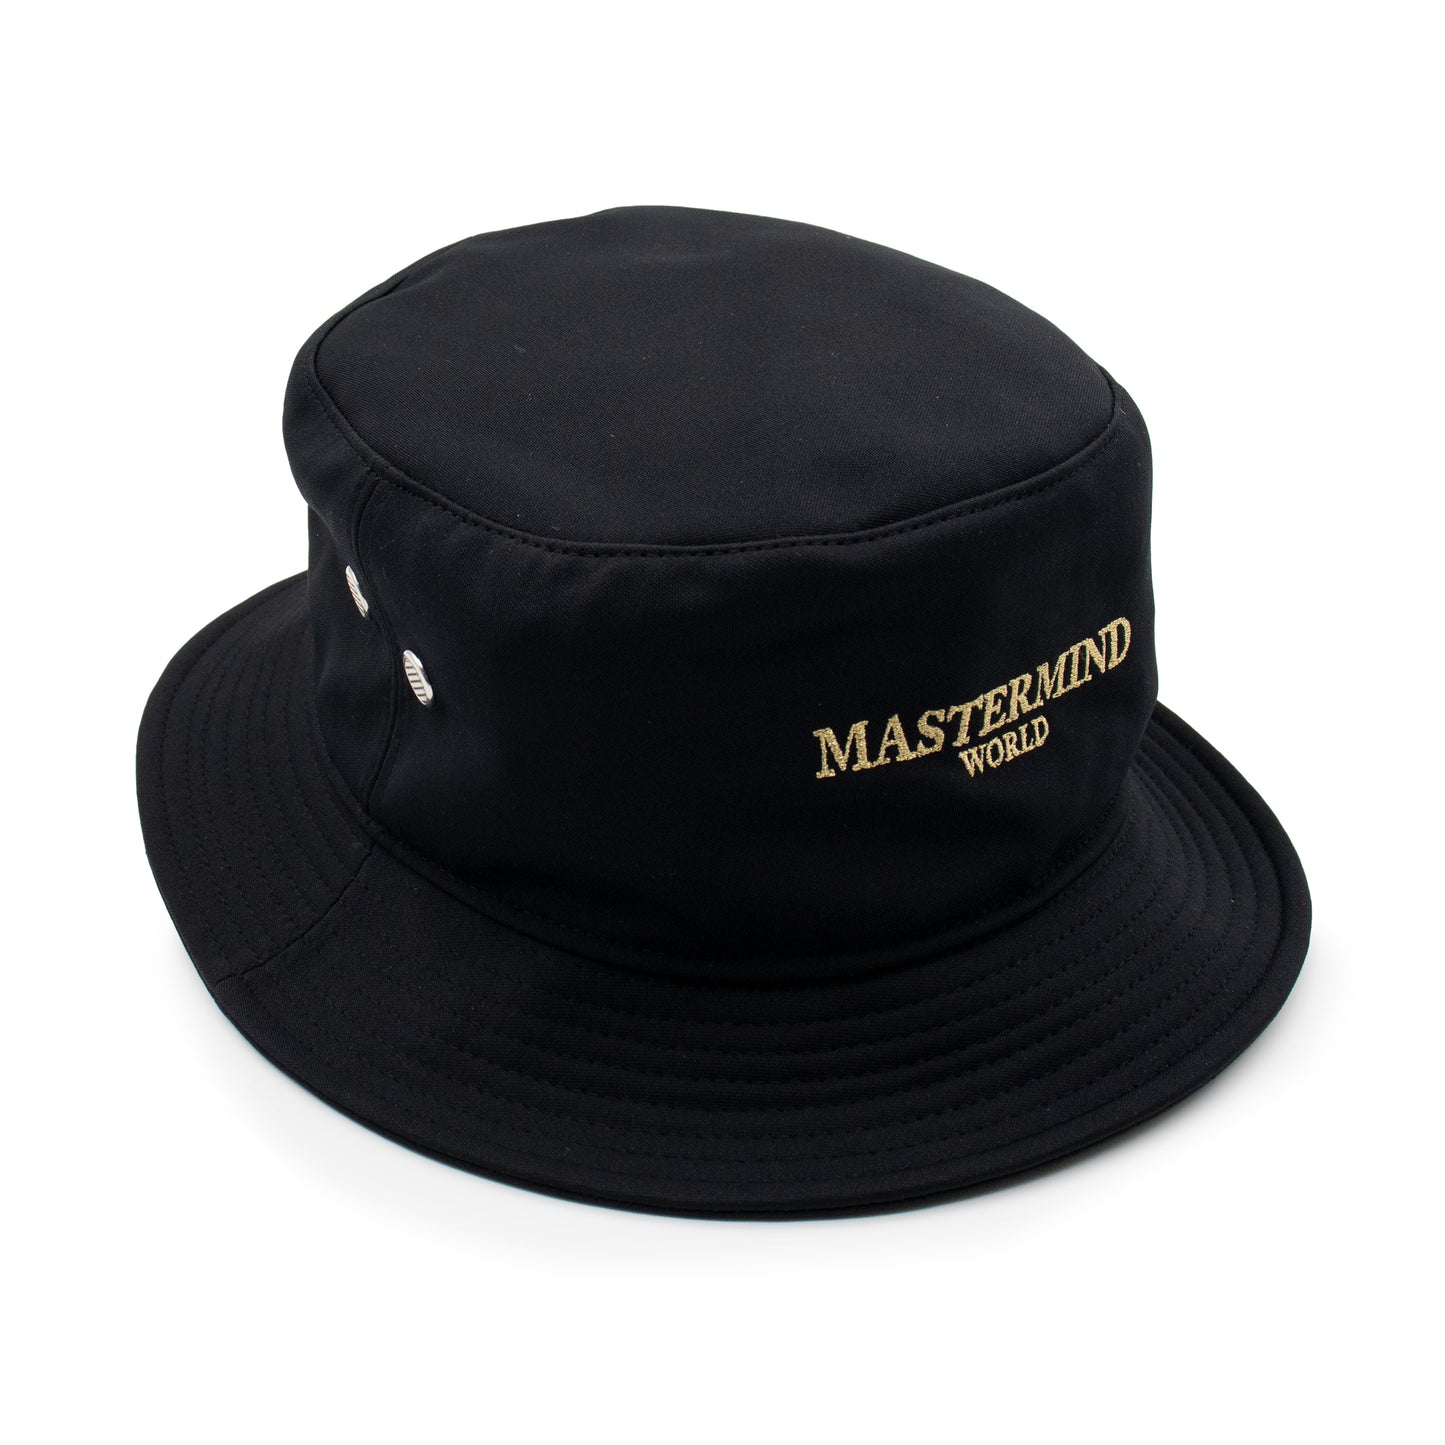 Mastermind World Hat in Black